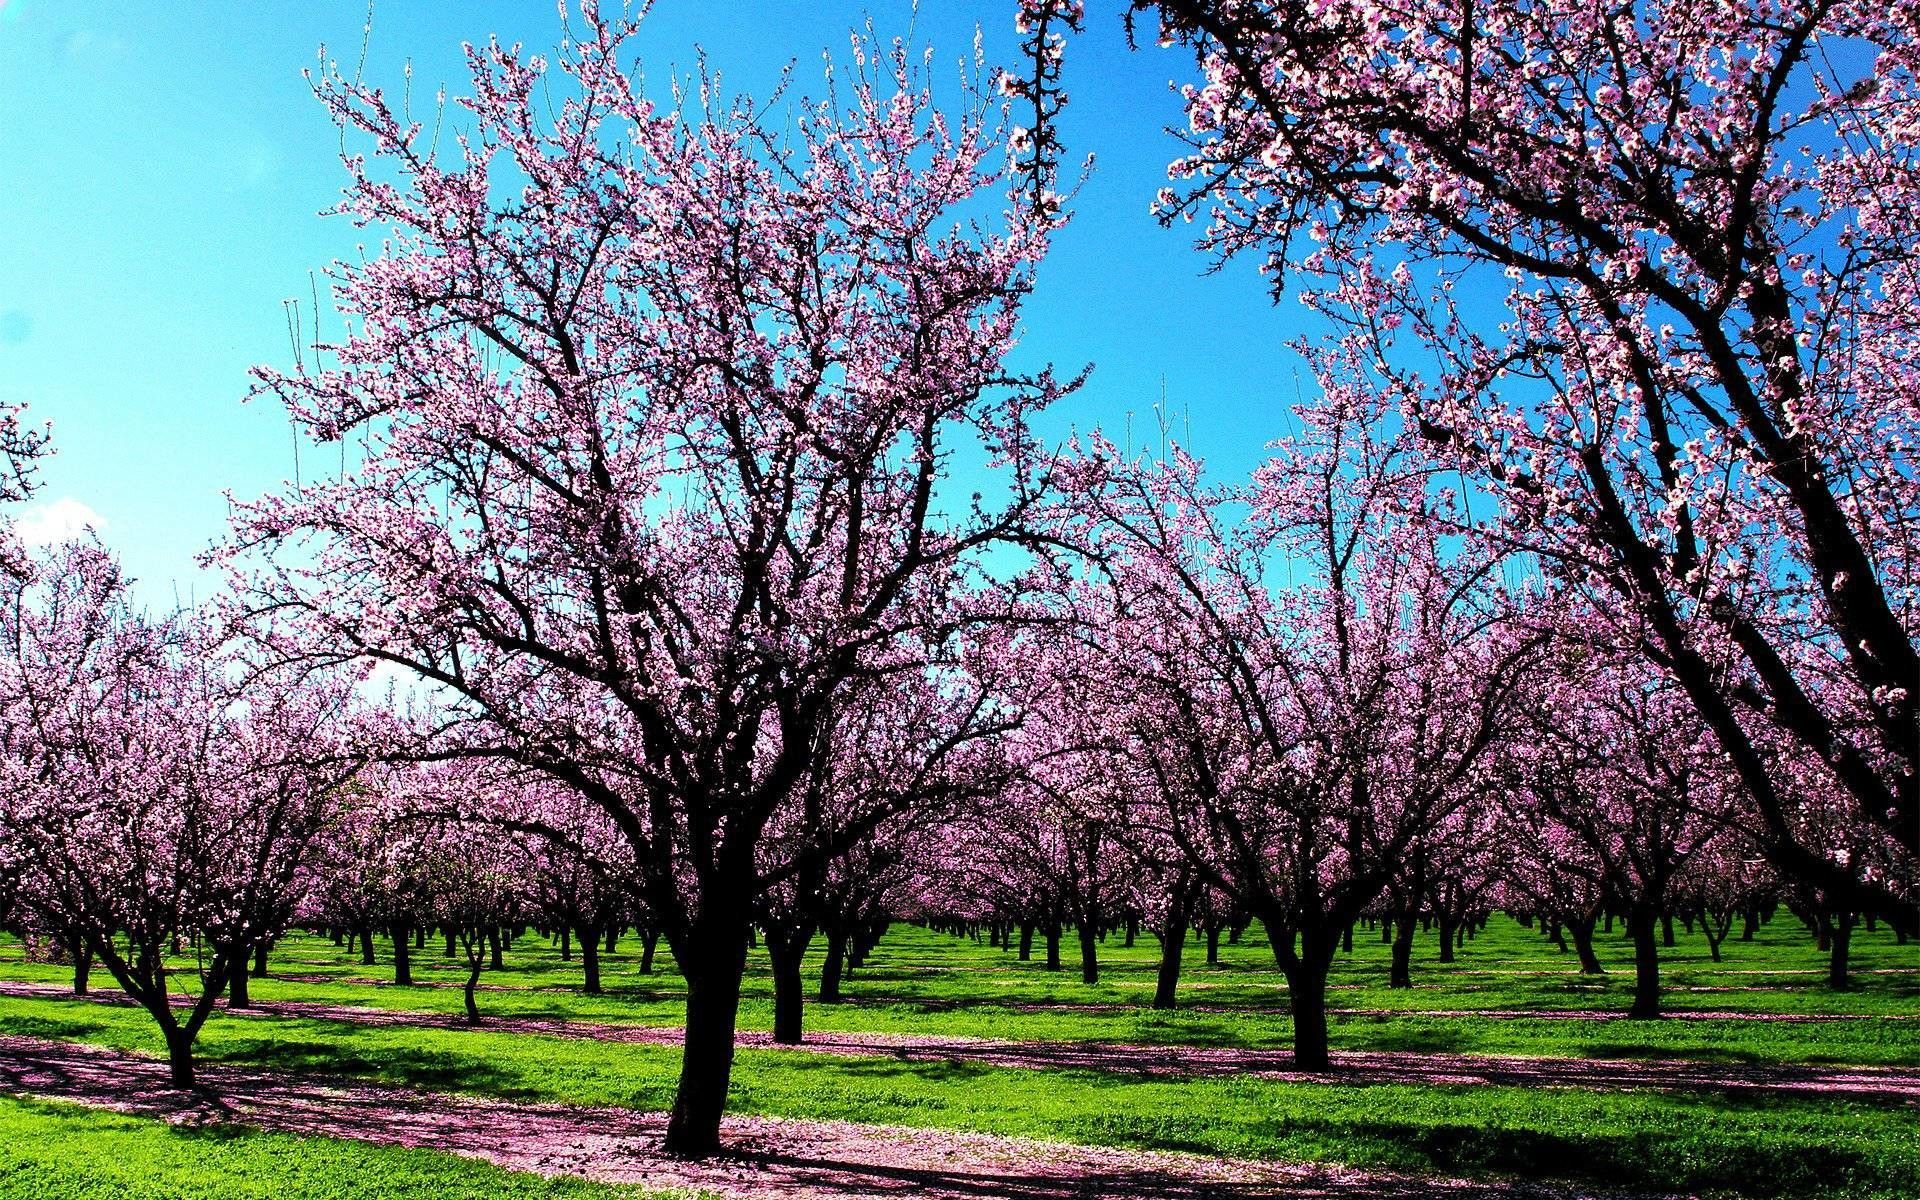 والپیپر باغی پر از درختان زیبای بهاری با شکوفه های صورتی برای دسکتاپ